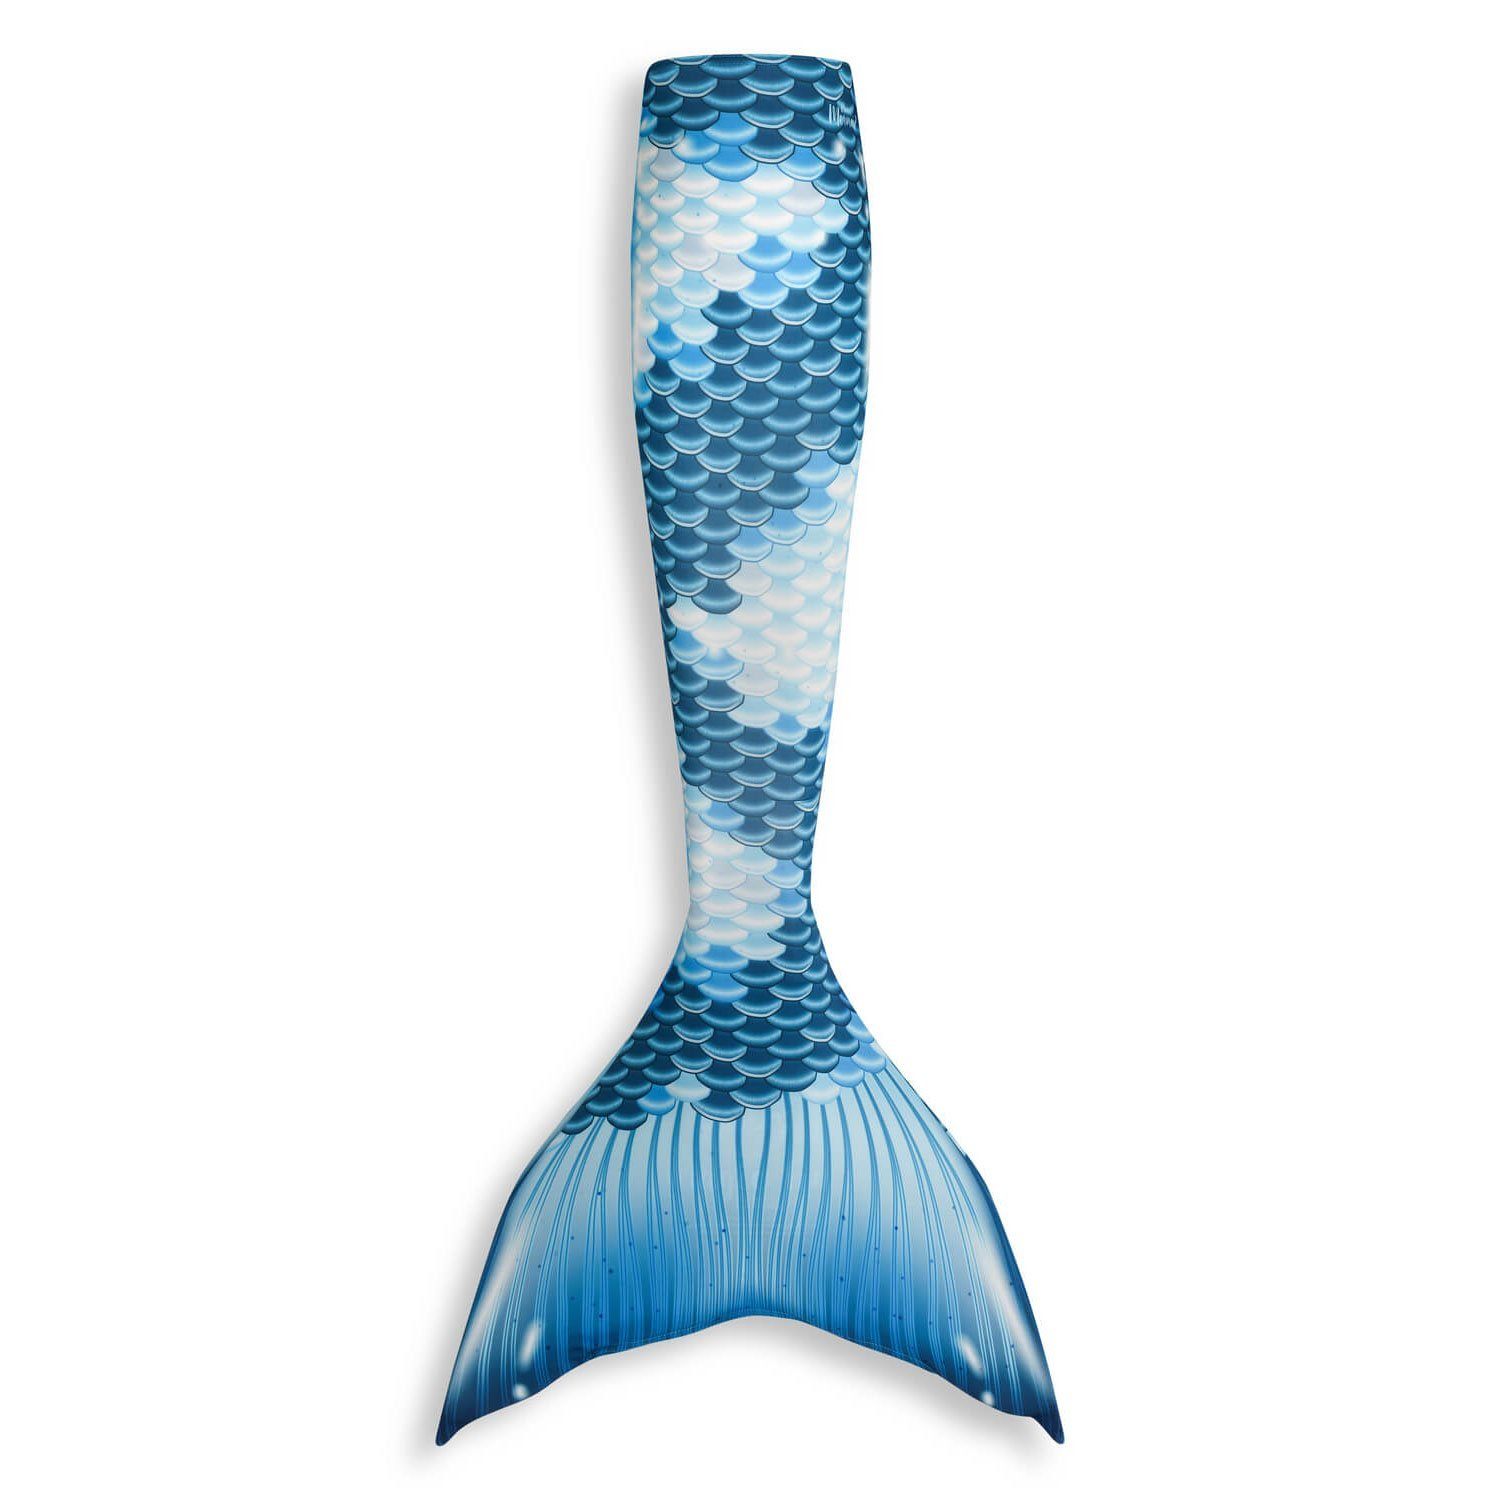 Mermaid Tail for Children - Kensington Bluebell - Made in the UK